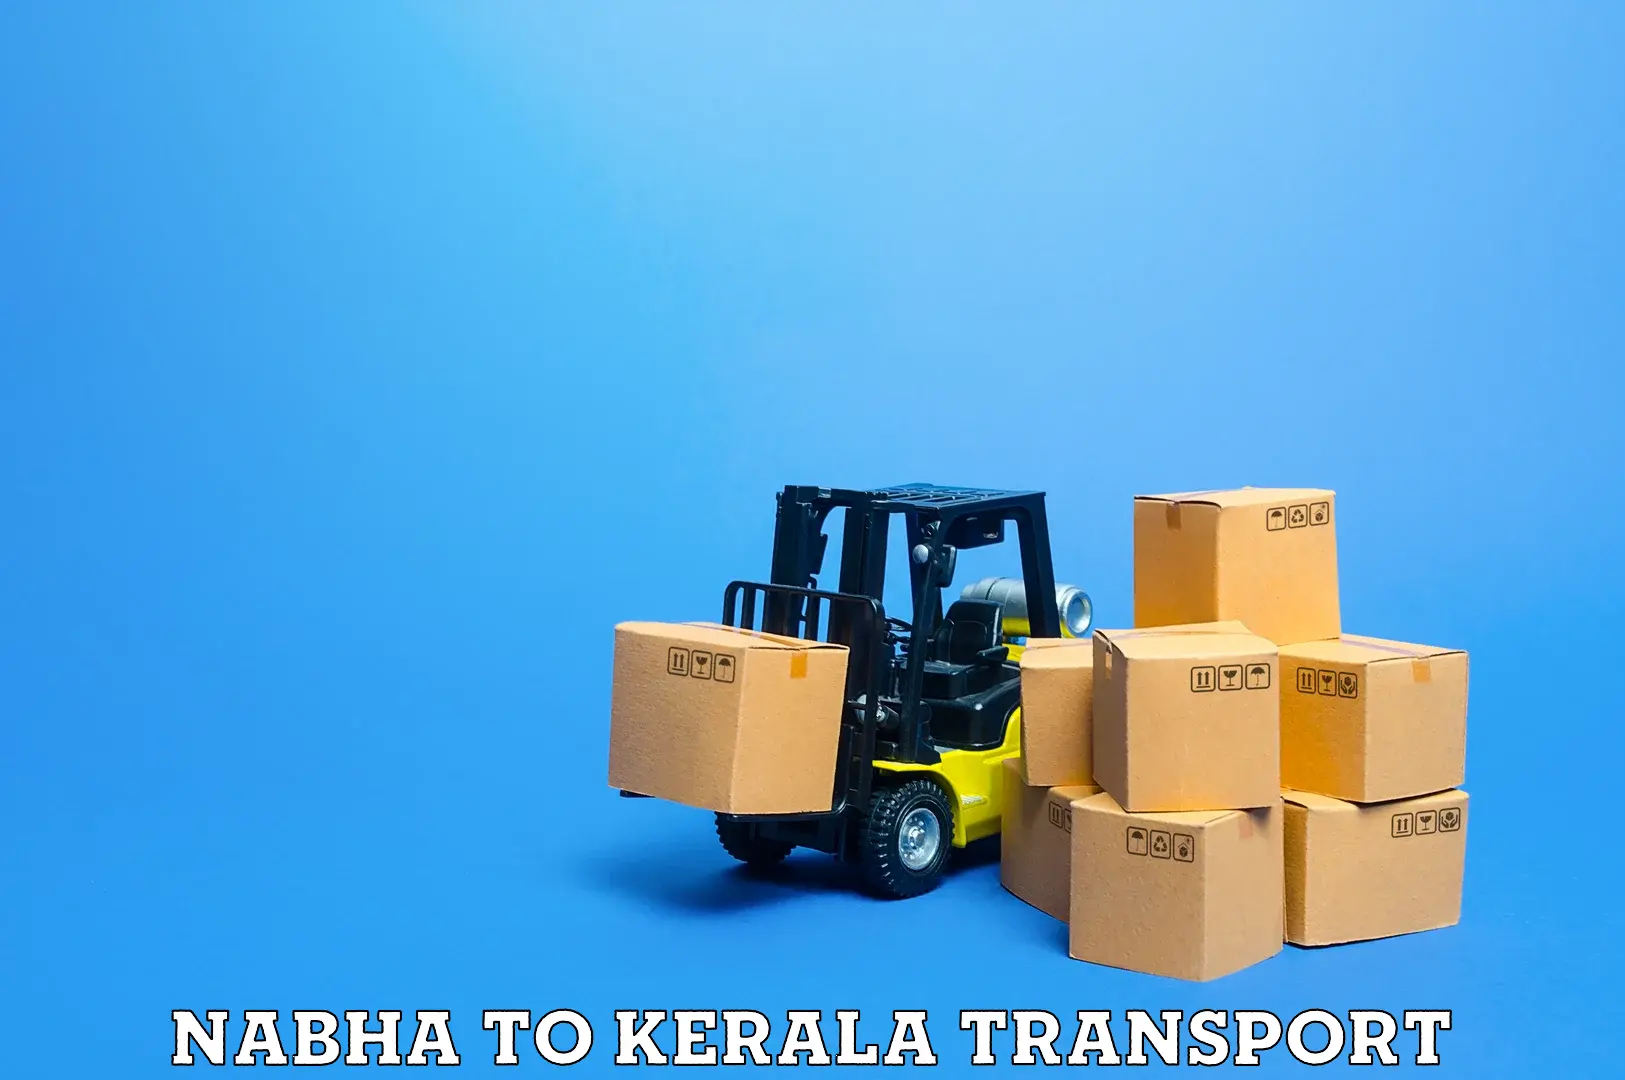 Furniture transport service Nabha to Kalluvathukkal